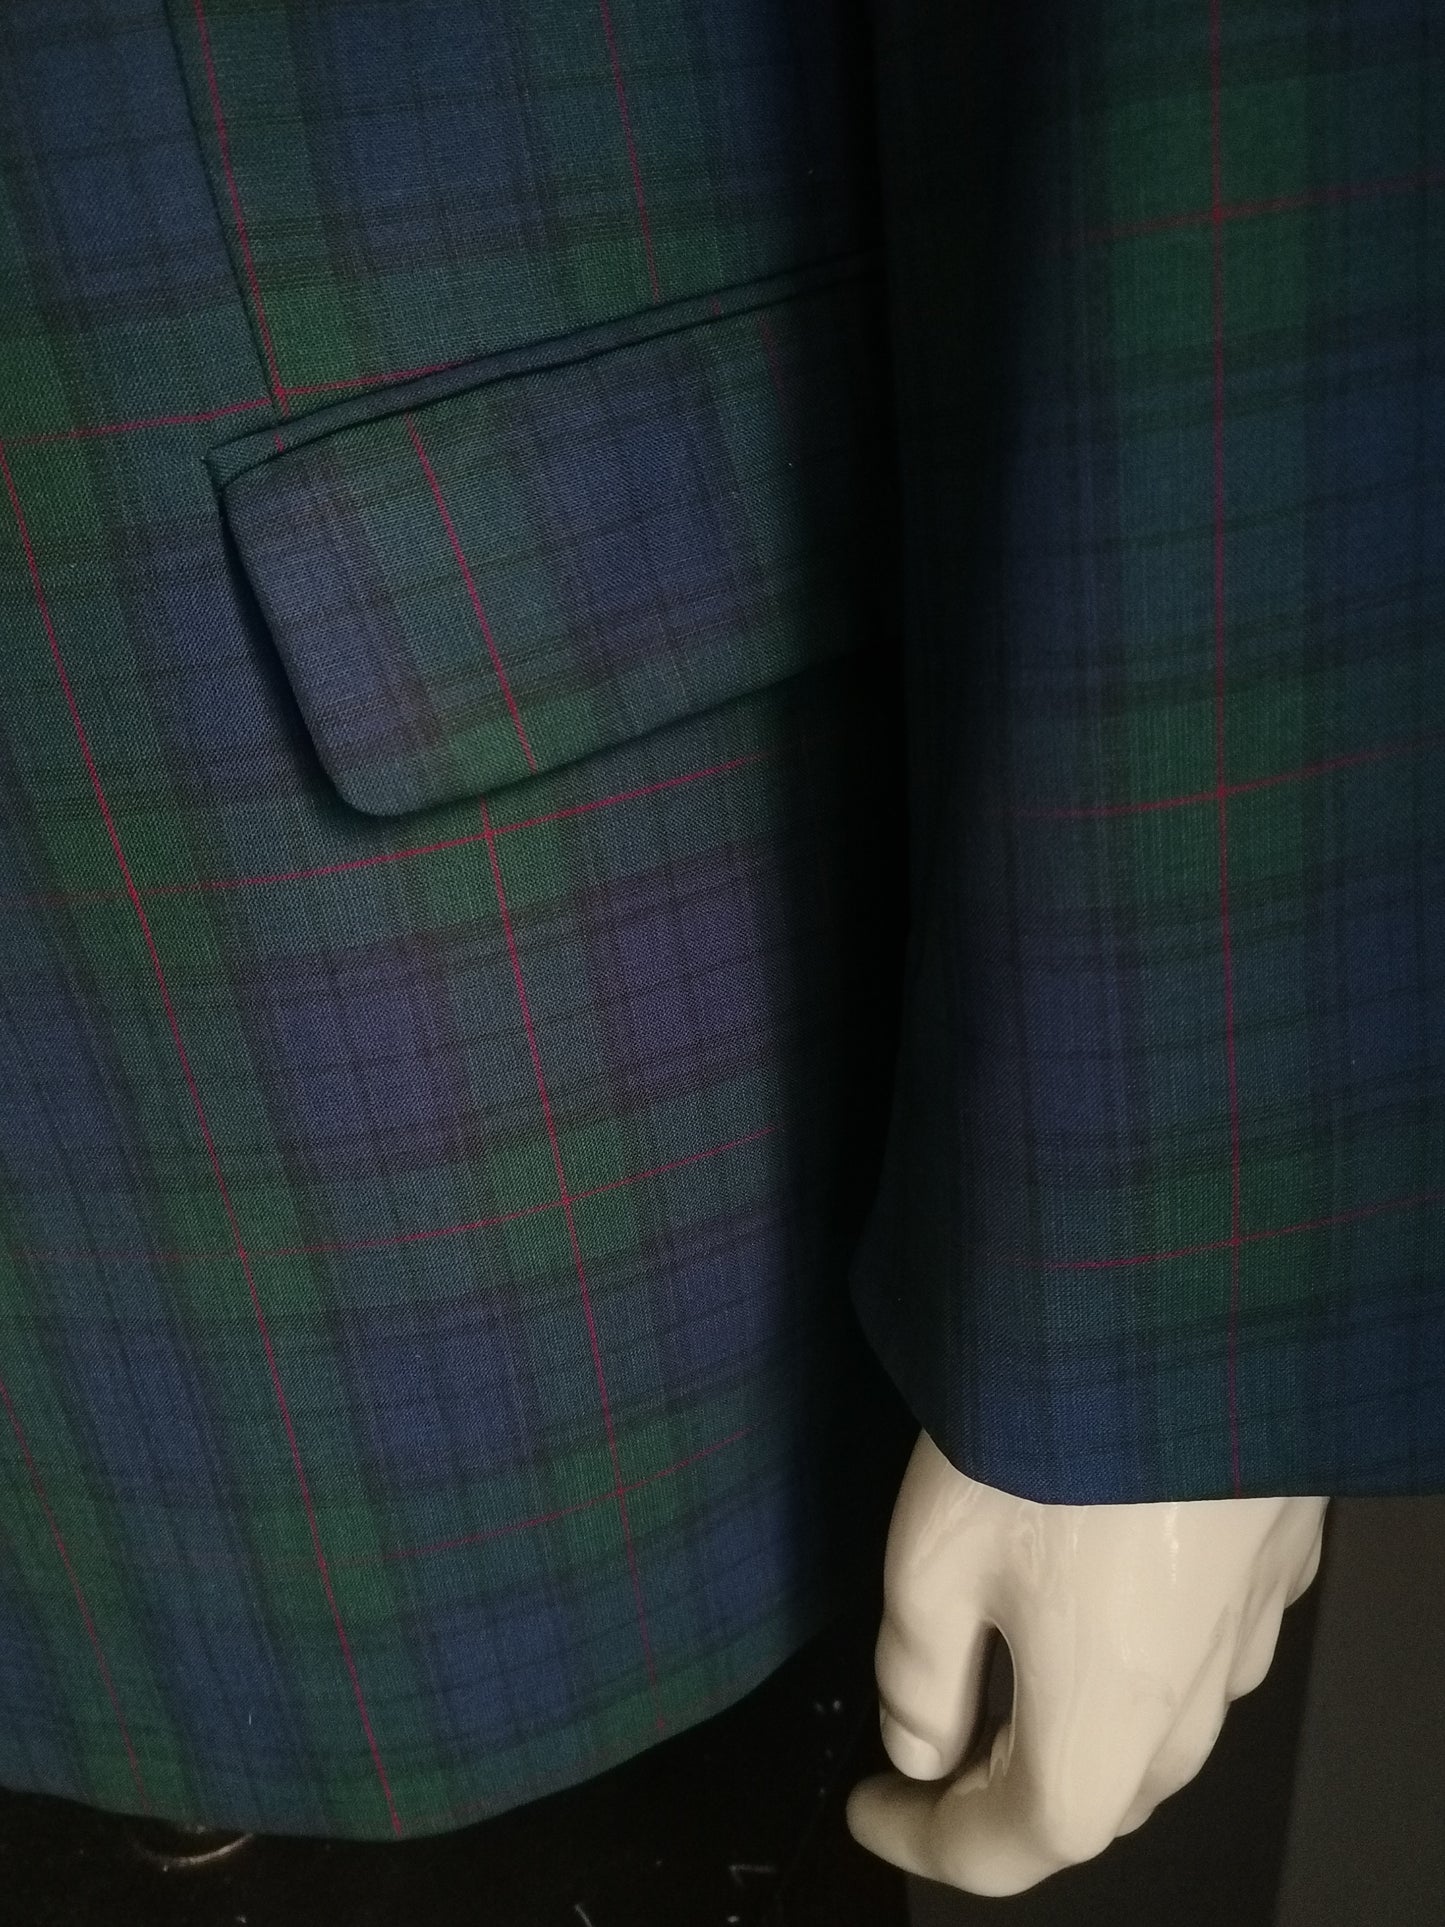 Transportage de laine Pohland / veste à double poitrine. Green Blue Red vérifié. Taille 28 / (56 / xl)